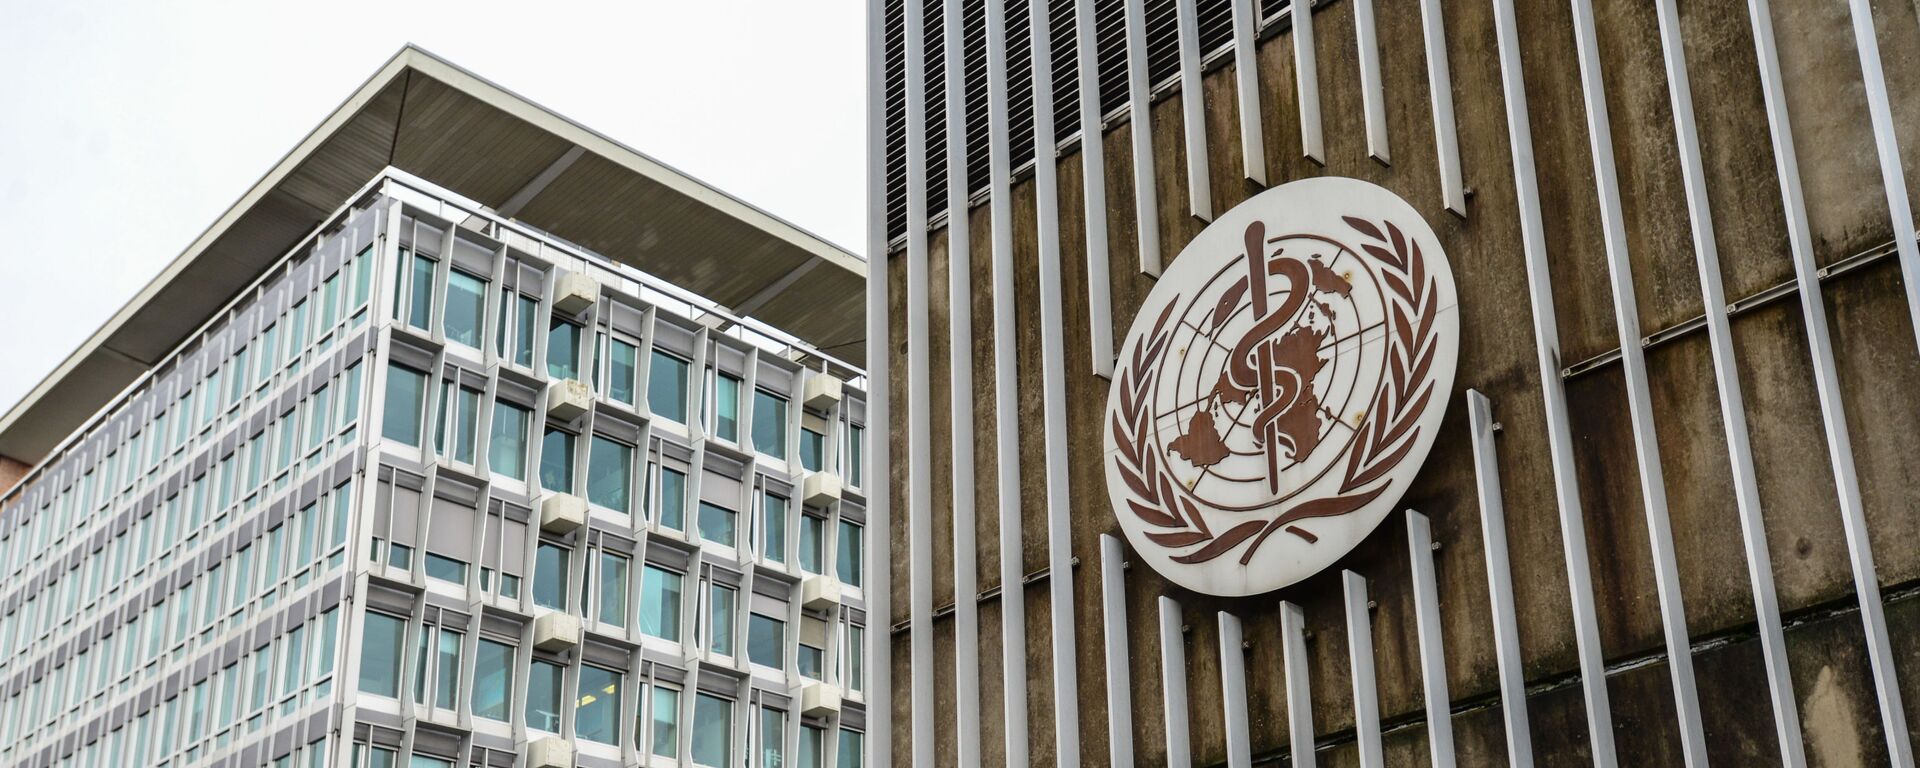 Здание штаб-квартиры Всемирной организации здравоохранения в Женеве.  - Sputnik Латвия, 1920, 26.11.2021